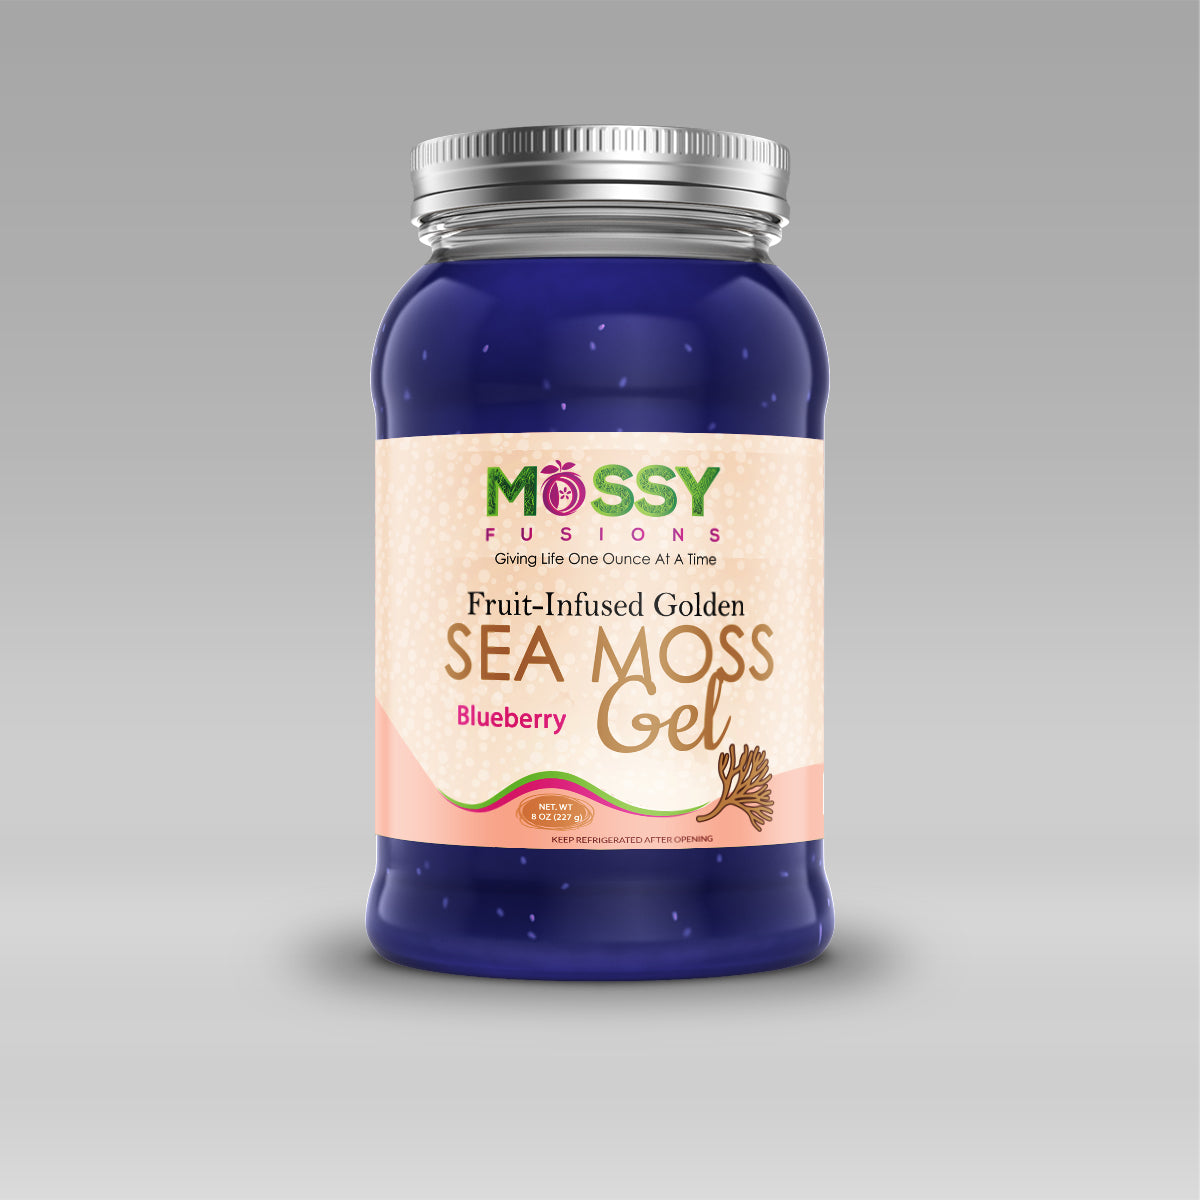 Golden Blueberry Sea Moss Gel